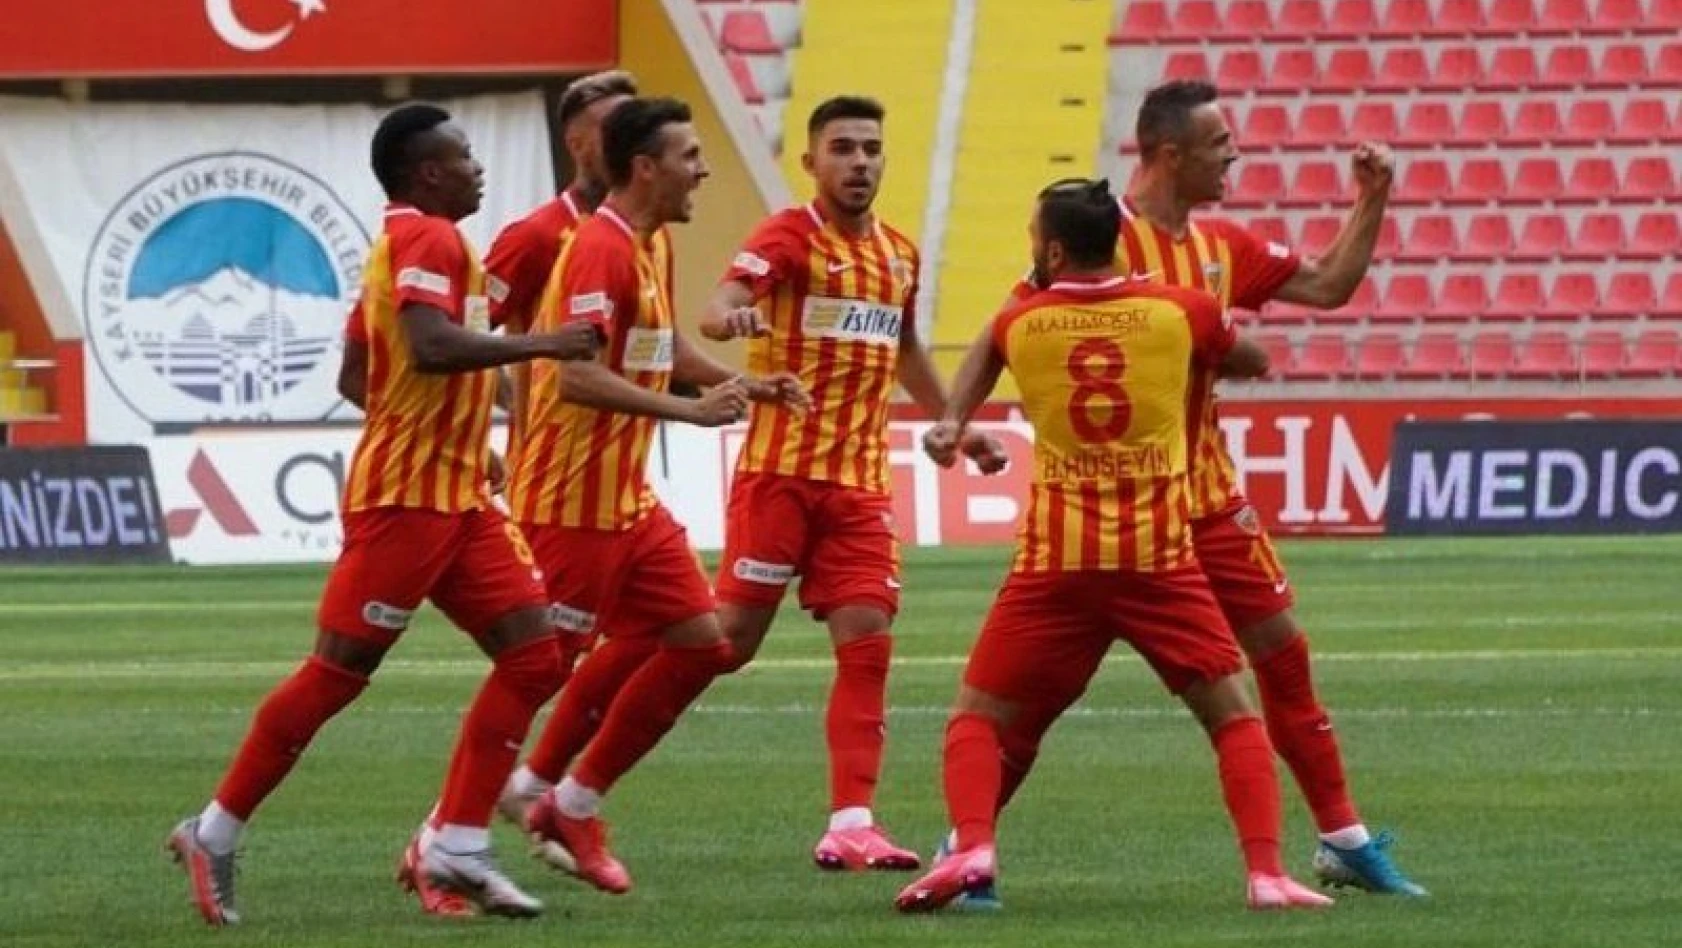 Kayserispor ile Malatyaspor 7.kez karşılaşacak